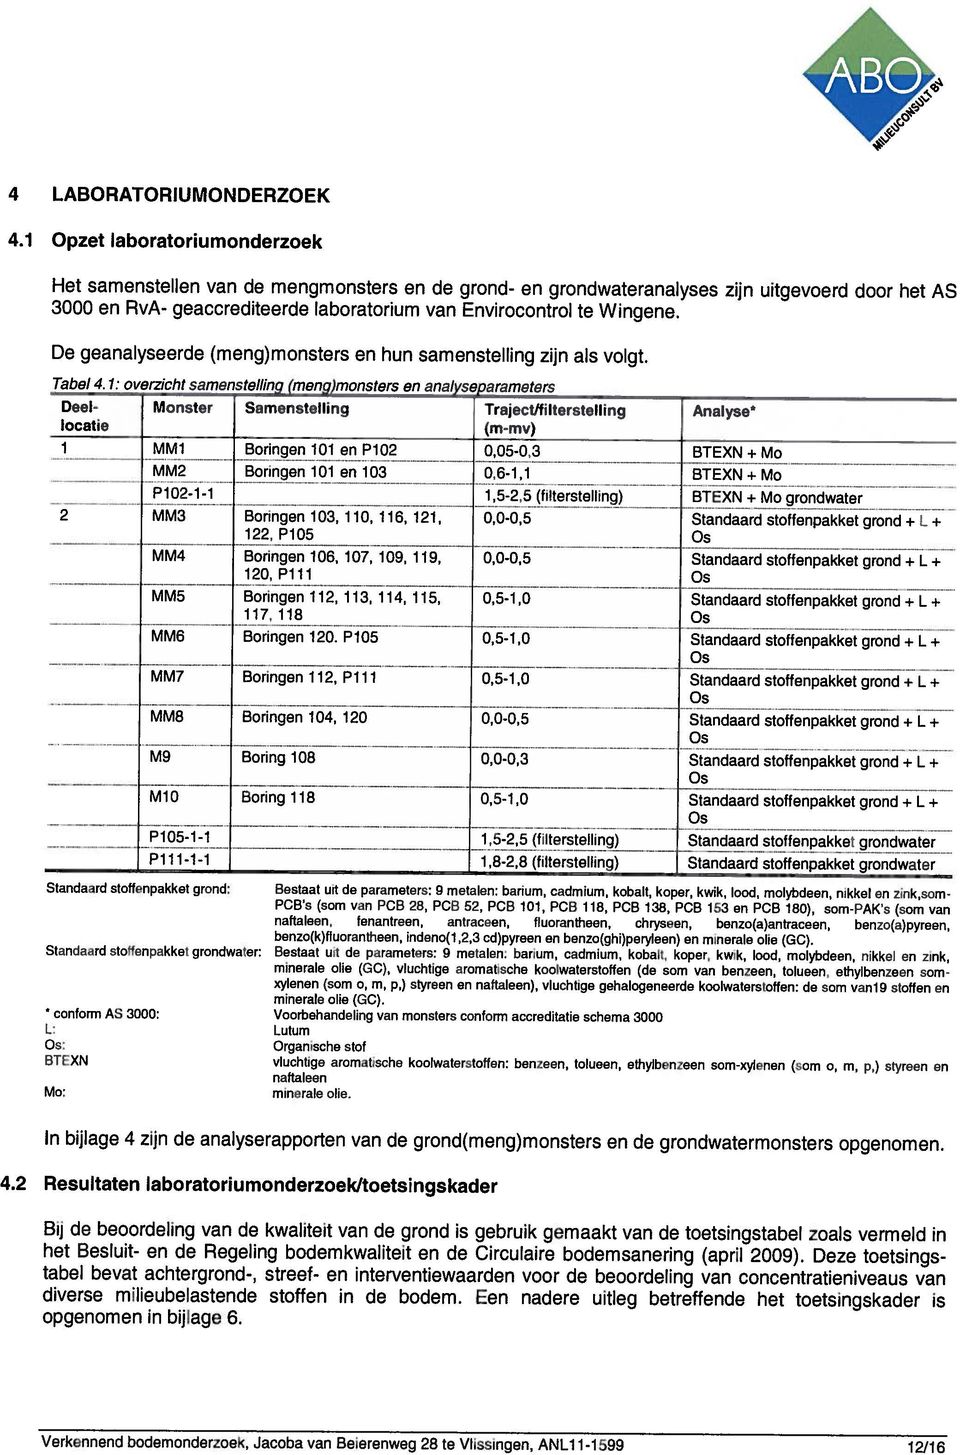 1 Opzet laboratoriumonderzoek Verkennend bodemonderzoek, Jacoba van Beierenweg 28 te Vlissingen, ANL111599 12/16 opgenomen in bijlage 6. diverse milieubelastende stoffen in de bodem.